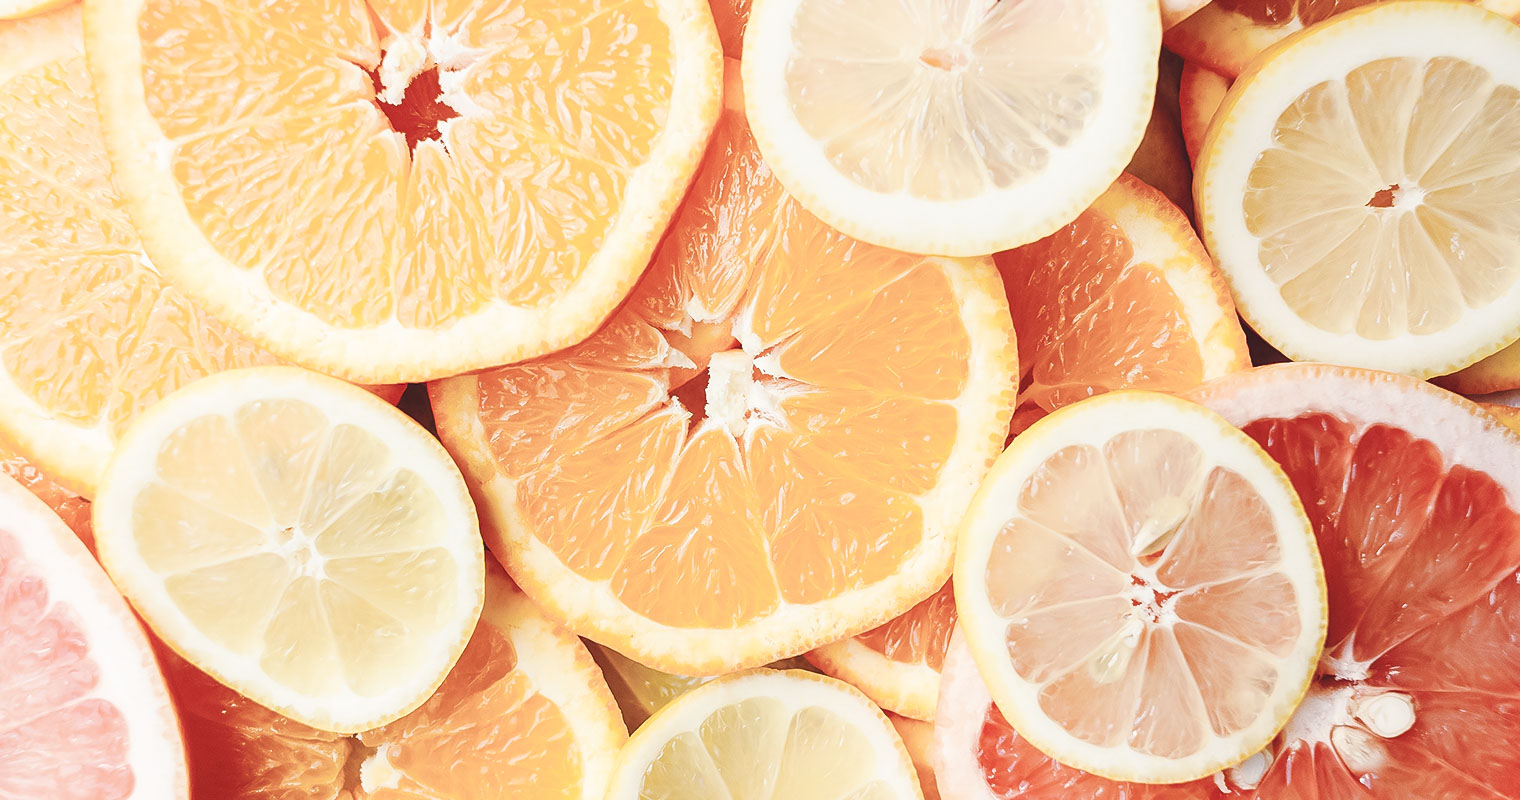 cut oranges with vitamins